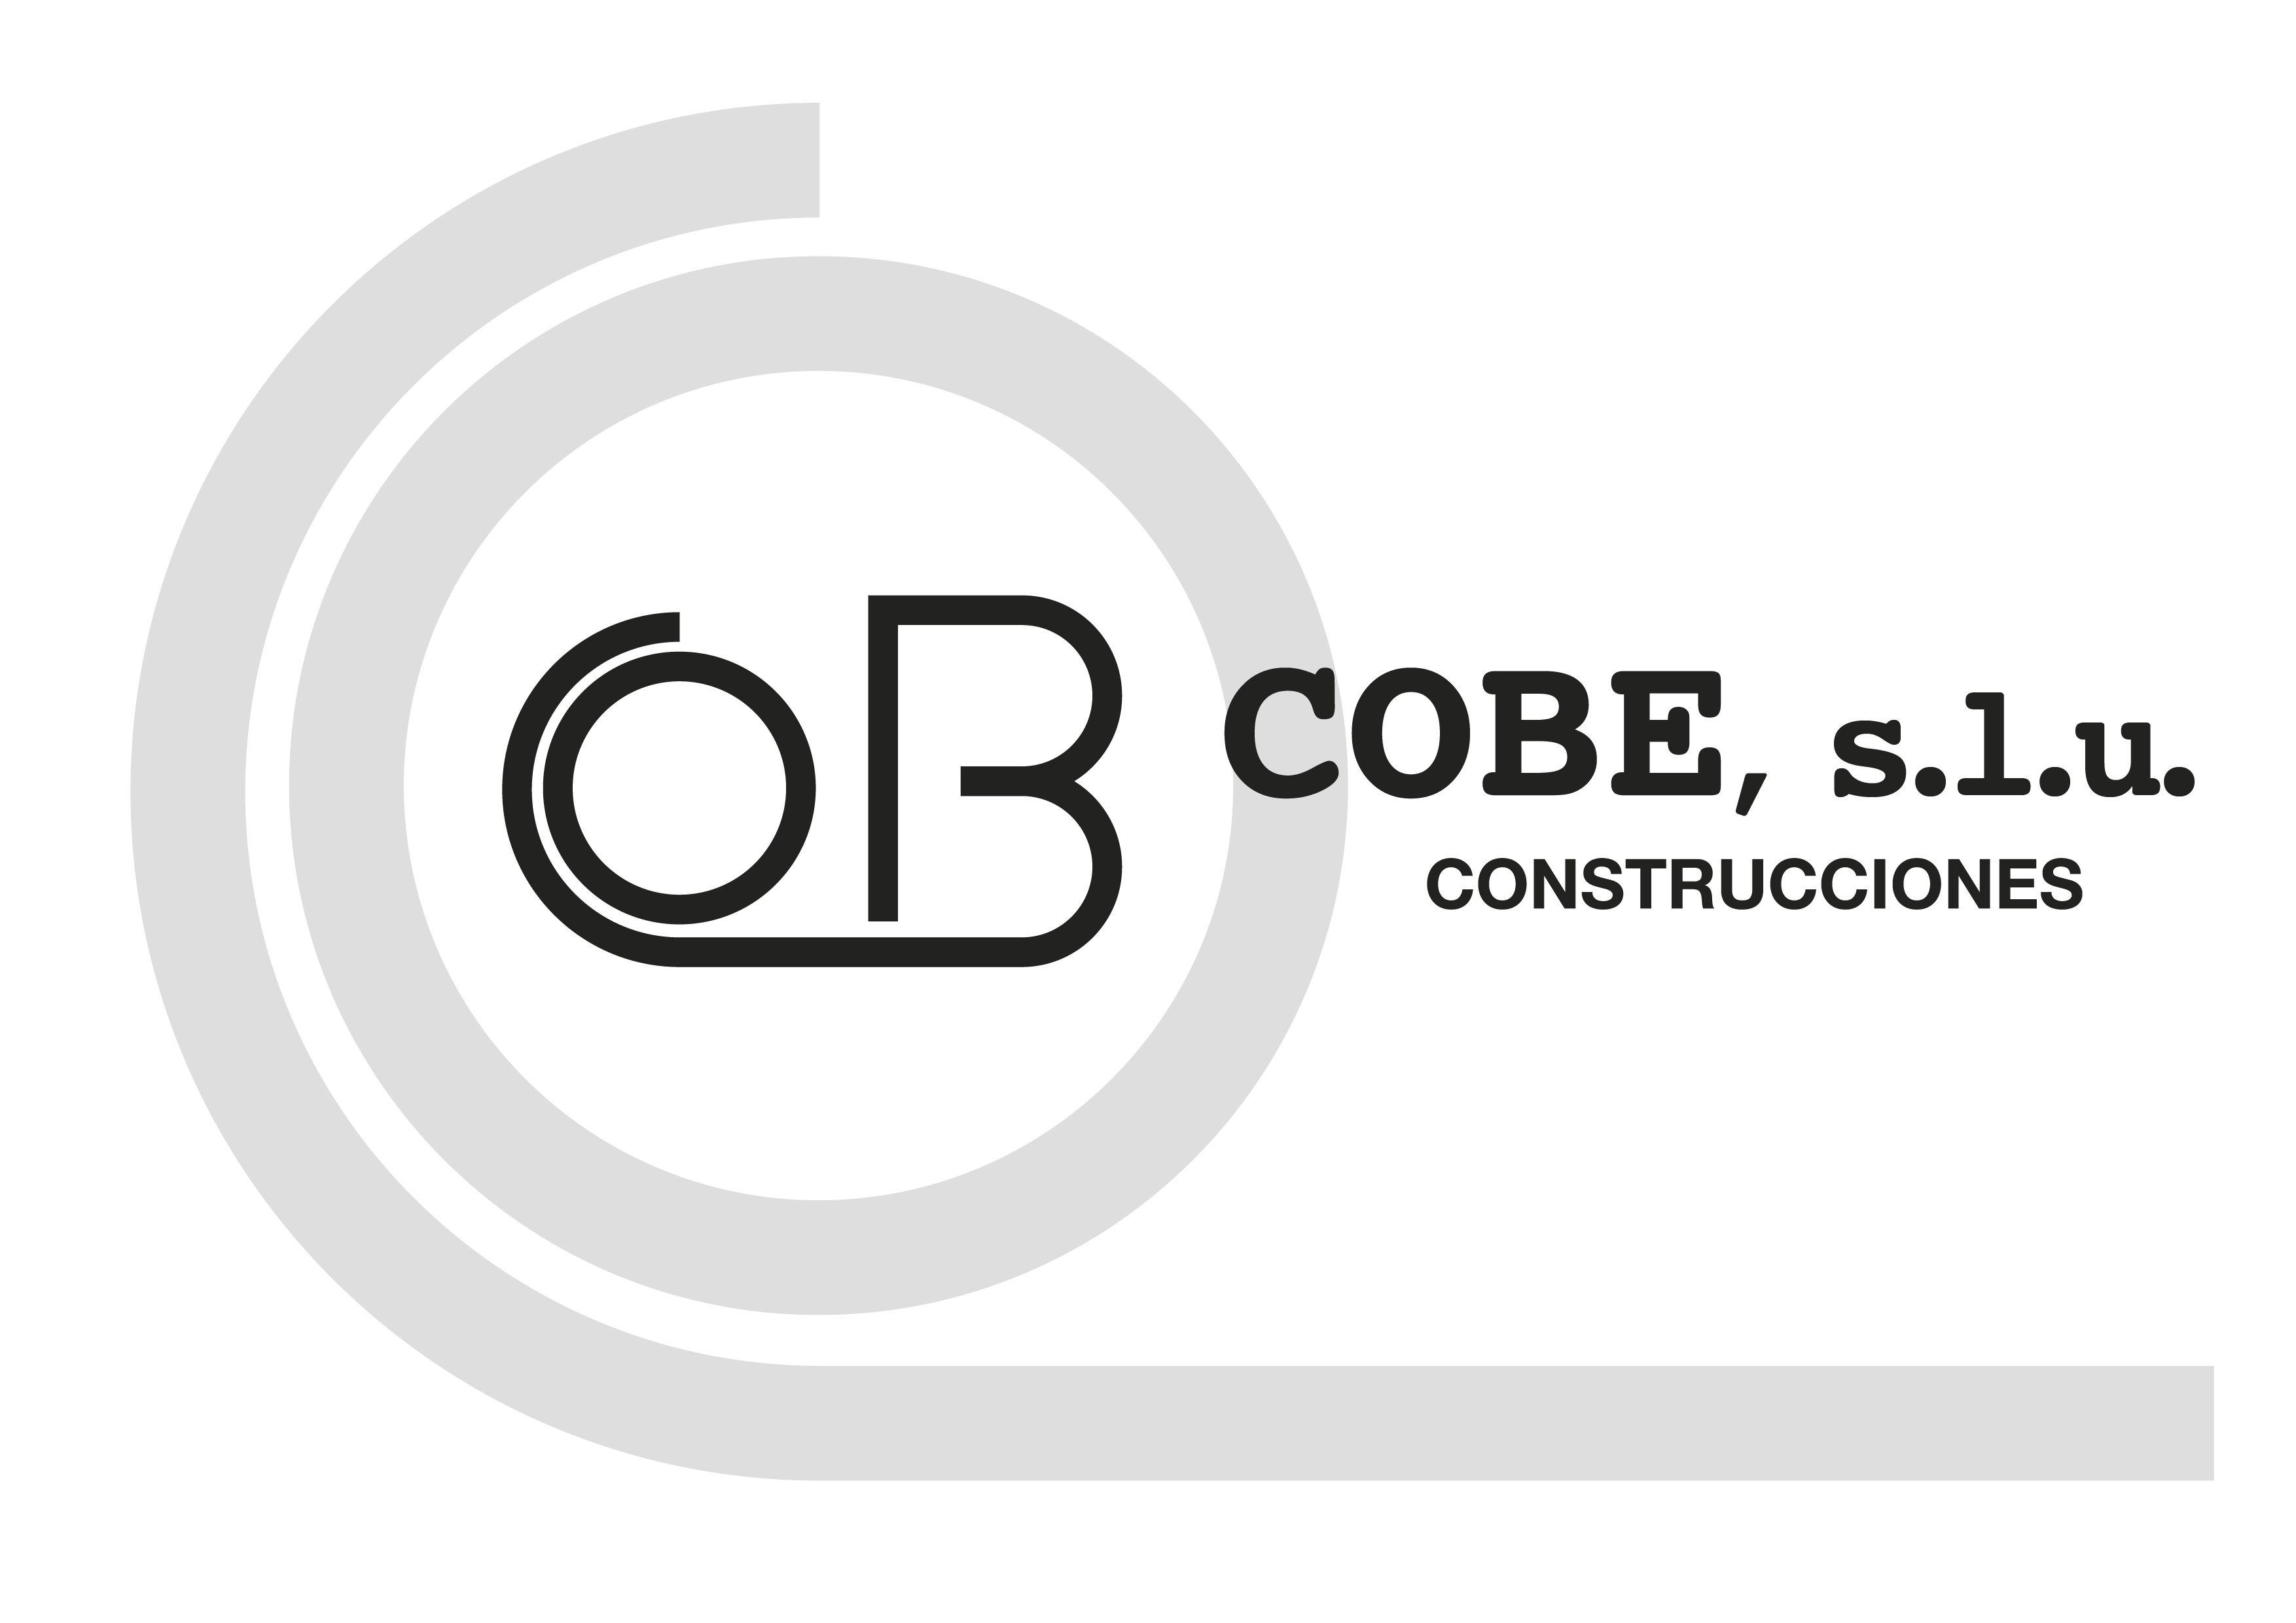 Cobe Logo - Construciones Cobe